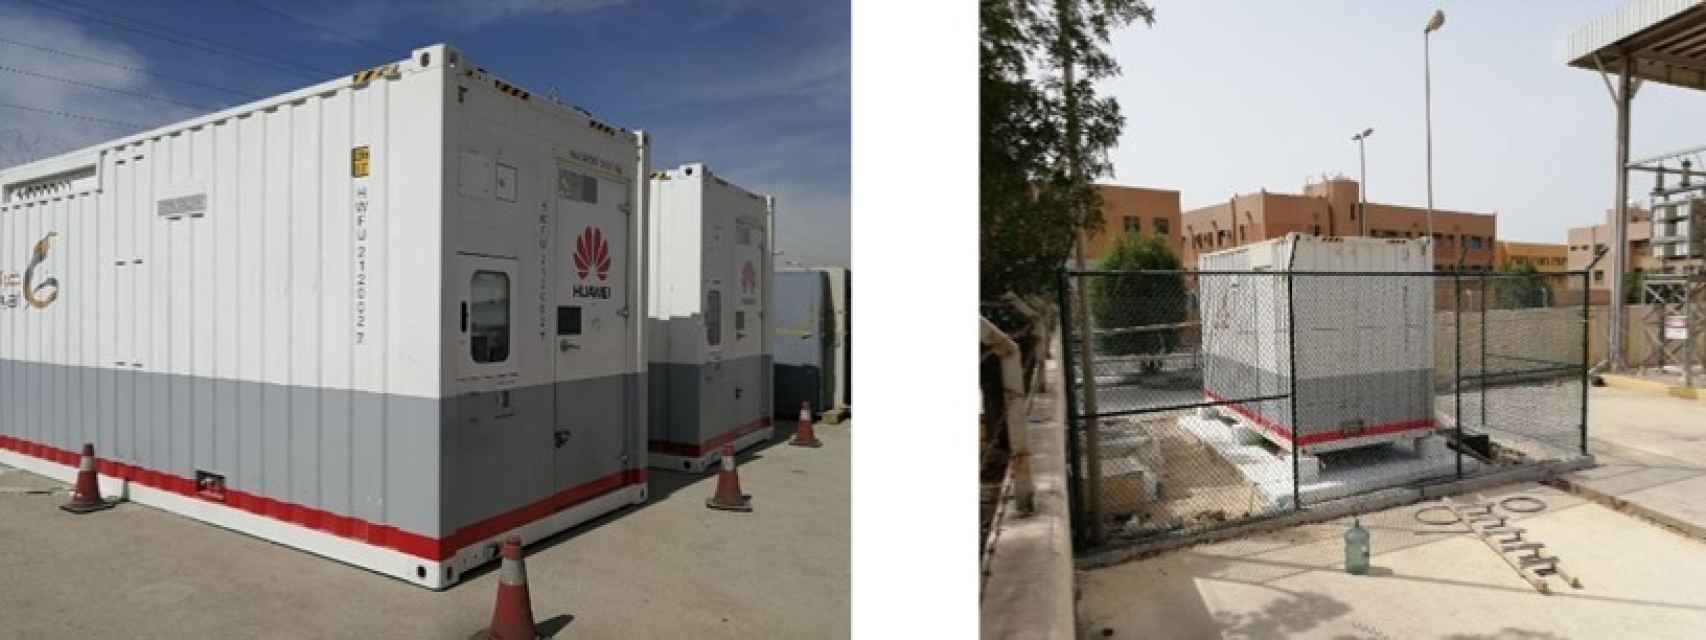 Los centros de datos modulares implantados por Dawiyat en Arabia Saudí.